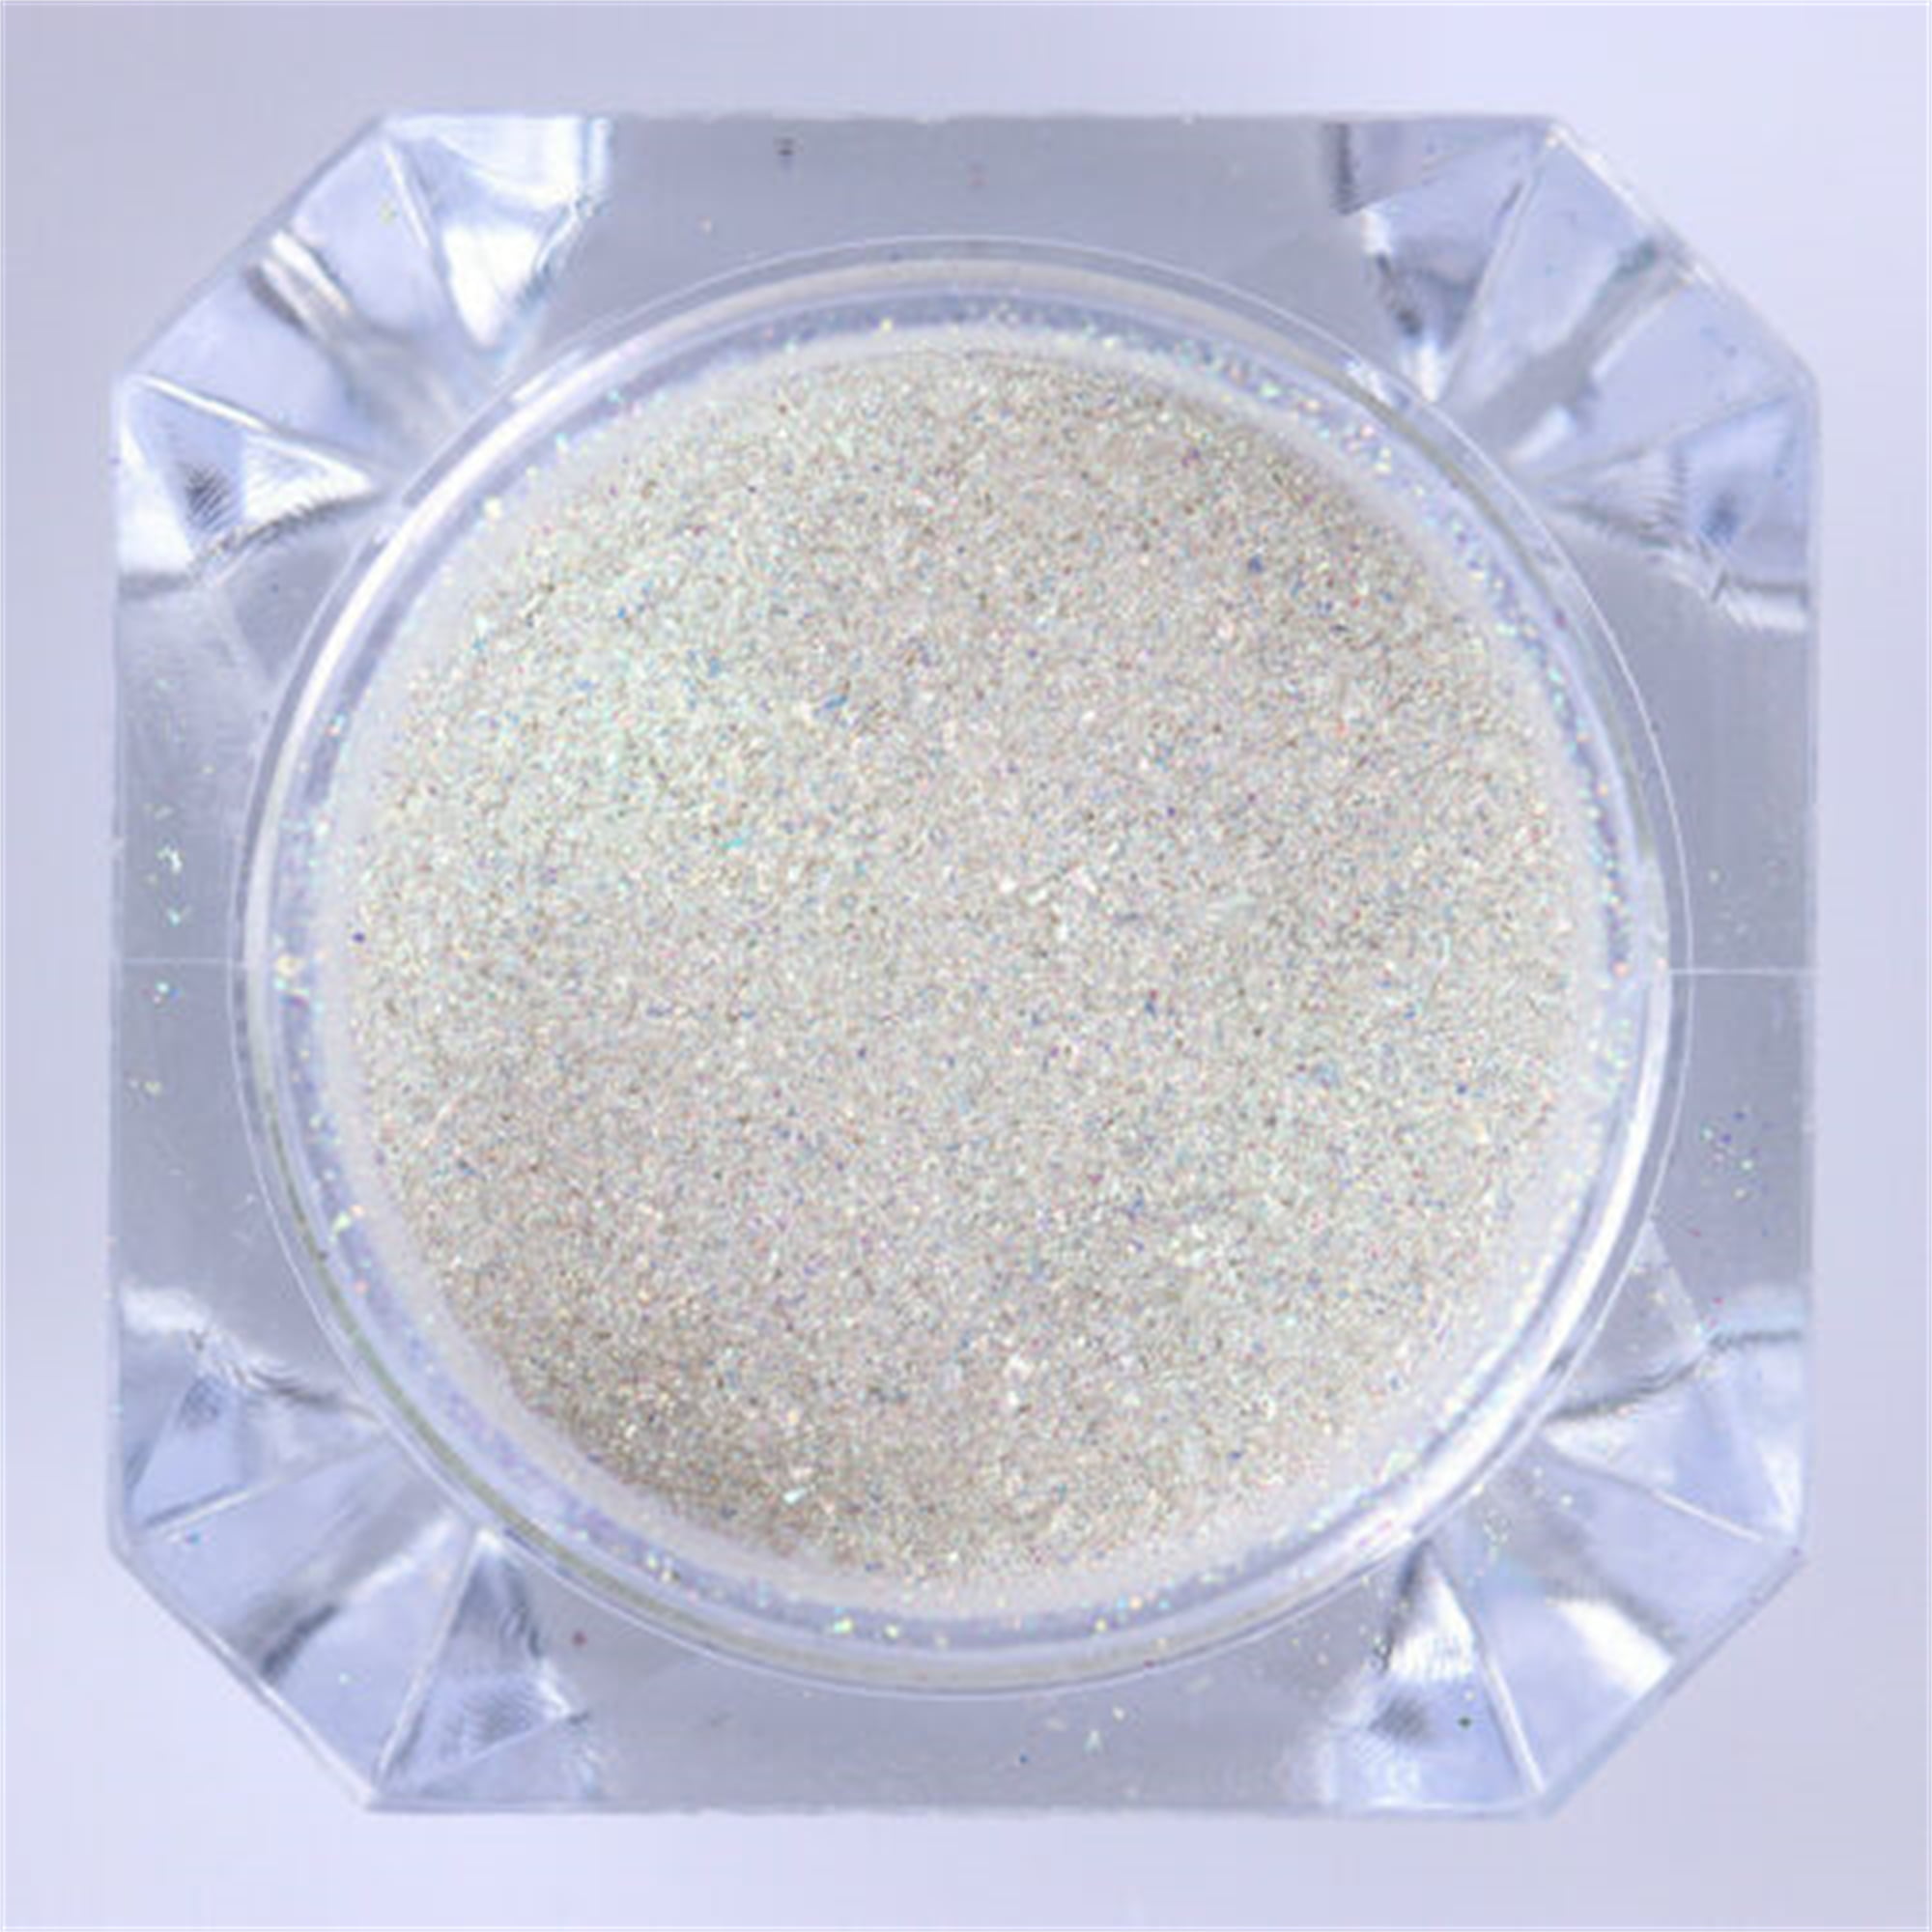 Shiny Black Glitter Powder (0.2grams)